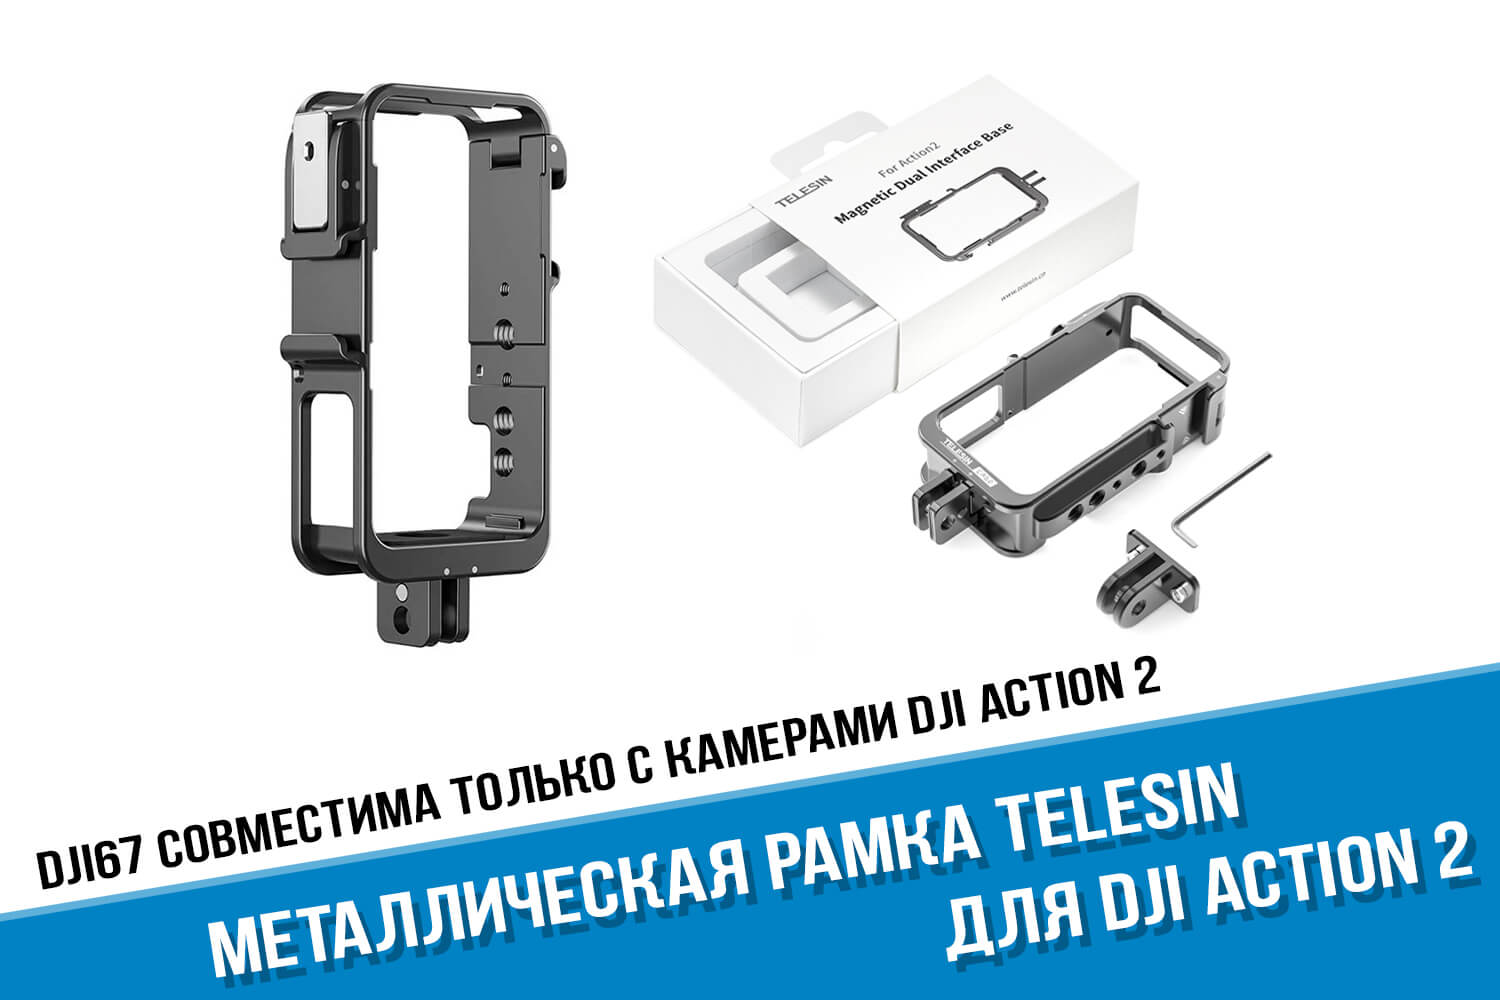 Металлическая рамка для DJI Action 2 фирмы Telesin